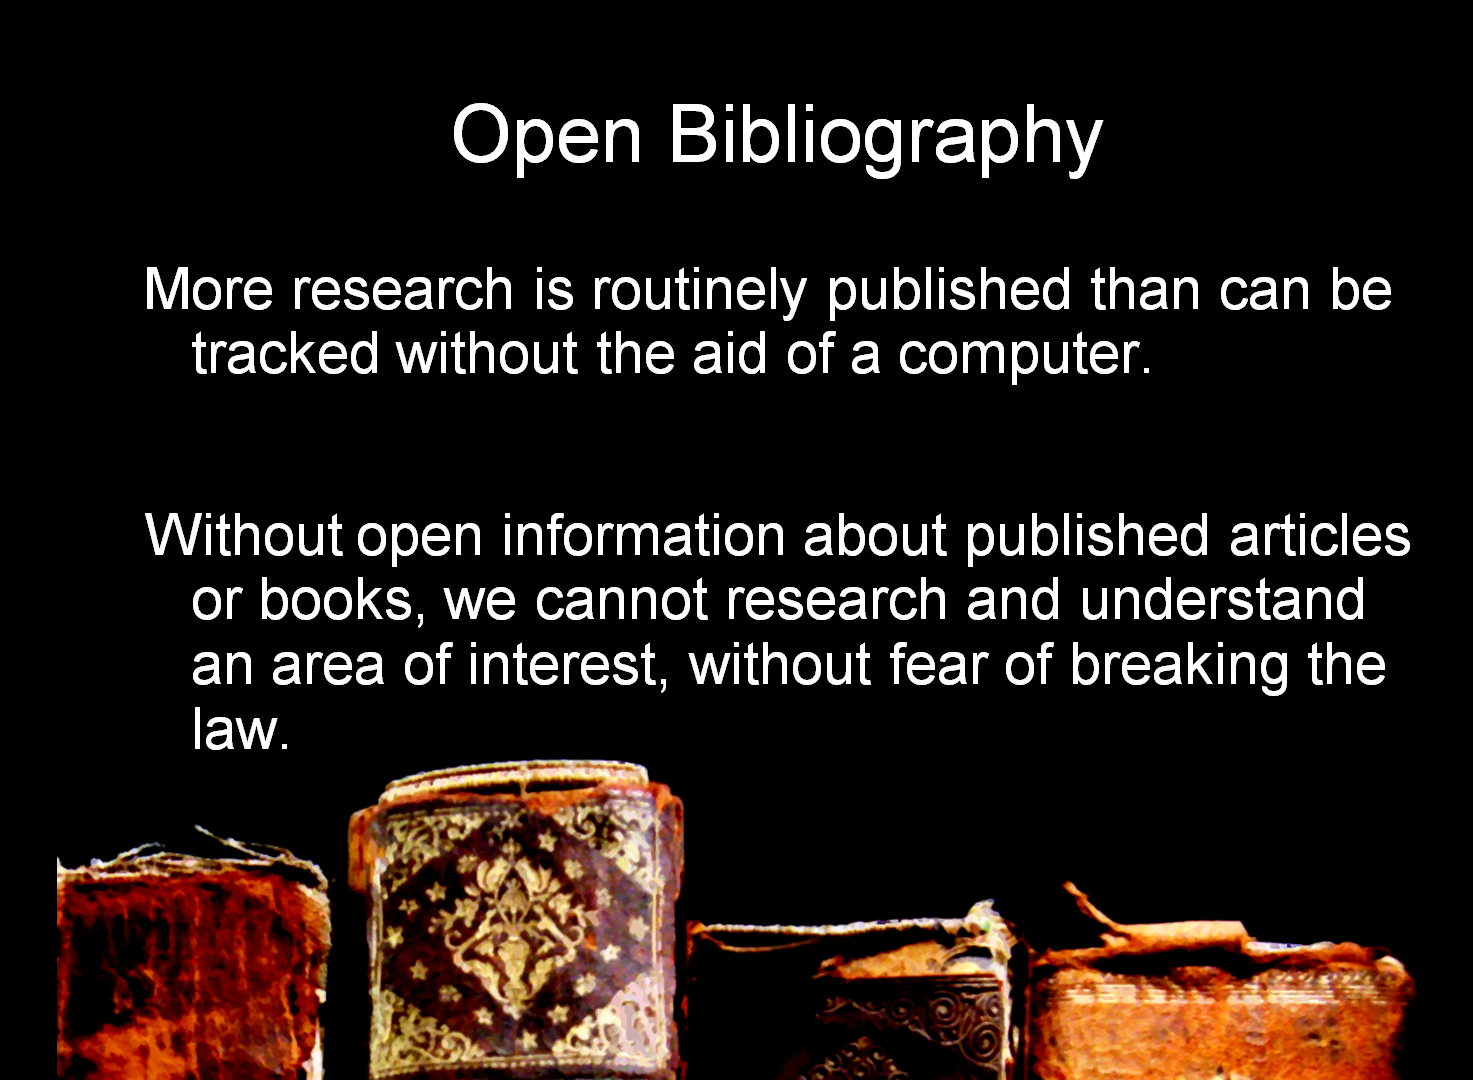 First slide of Ben O'Steen's rapid slide presentation